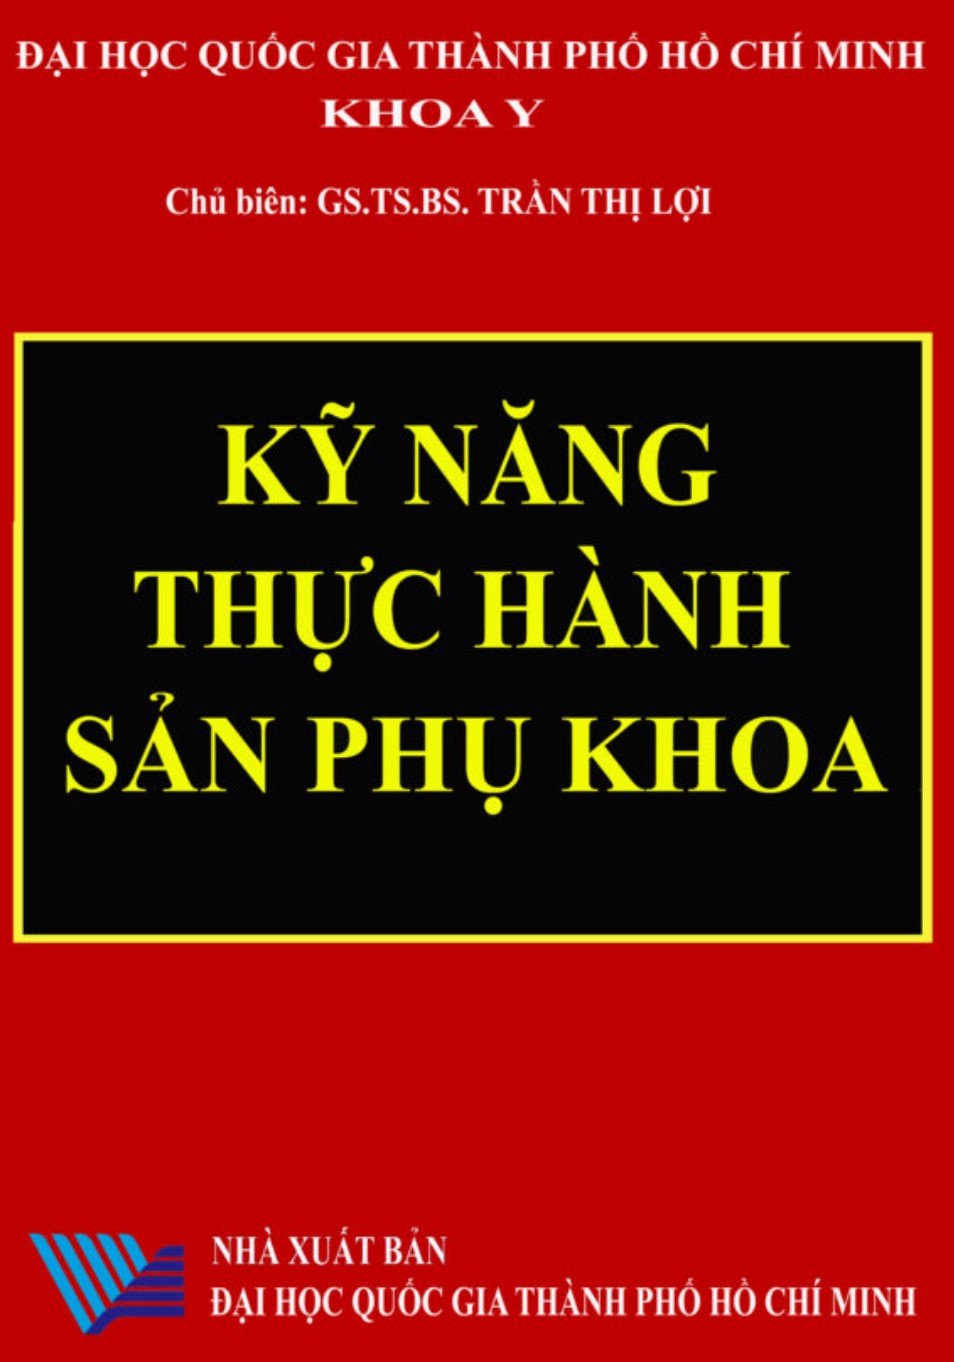 ky nang thuc hanh san phu khoa